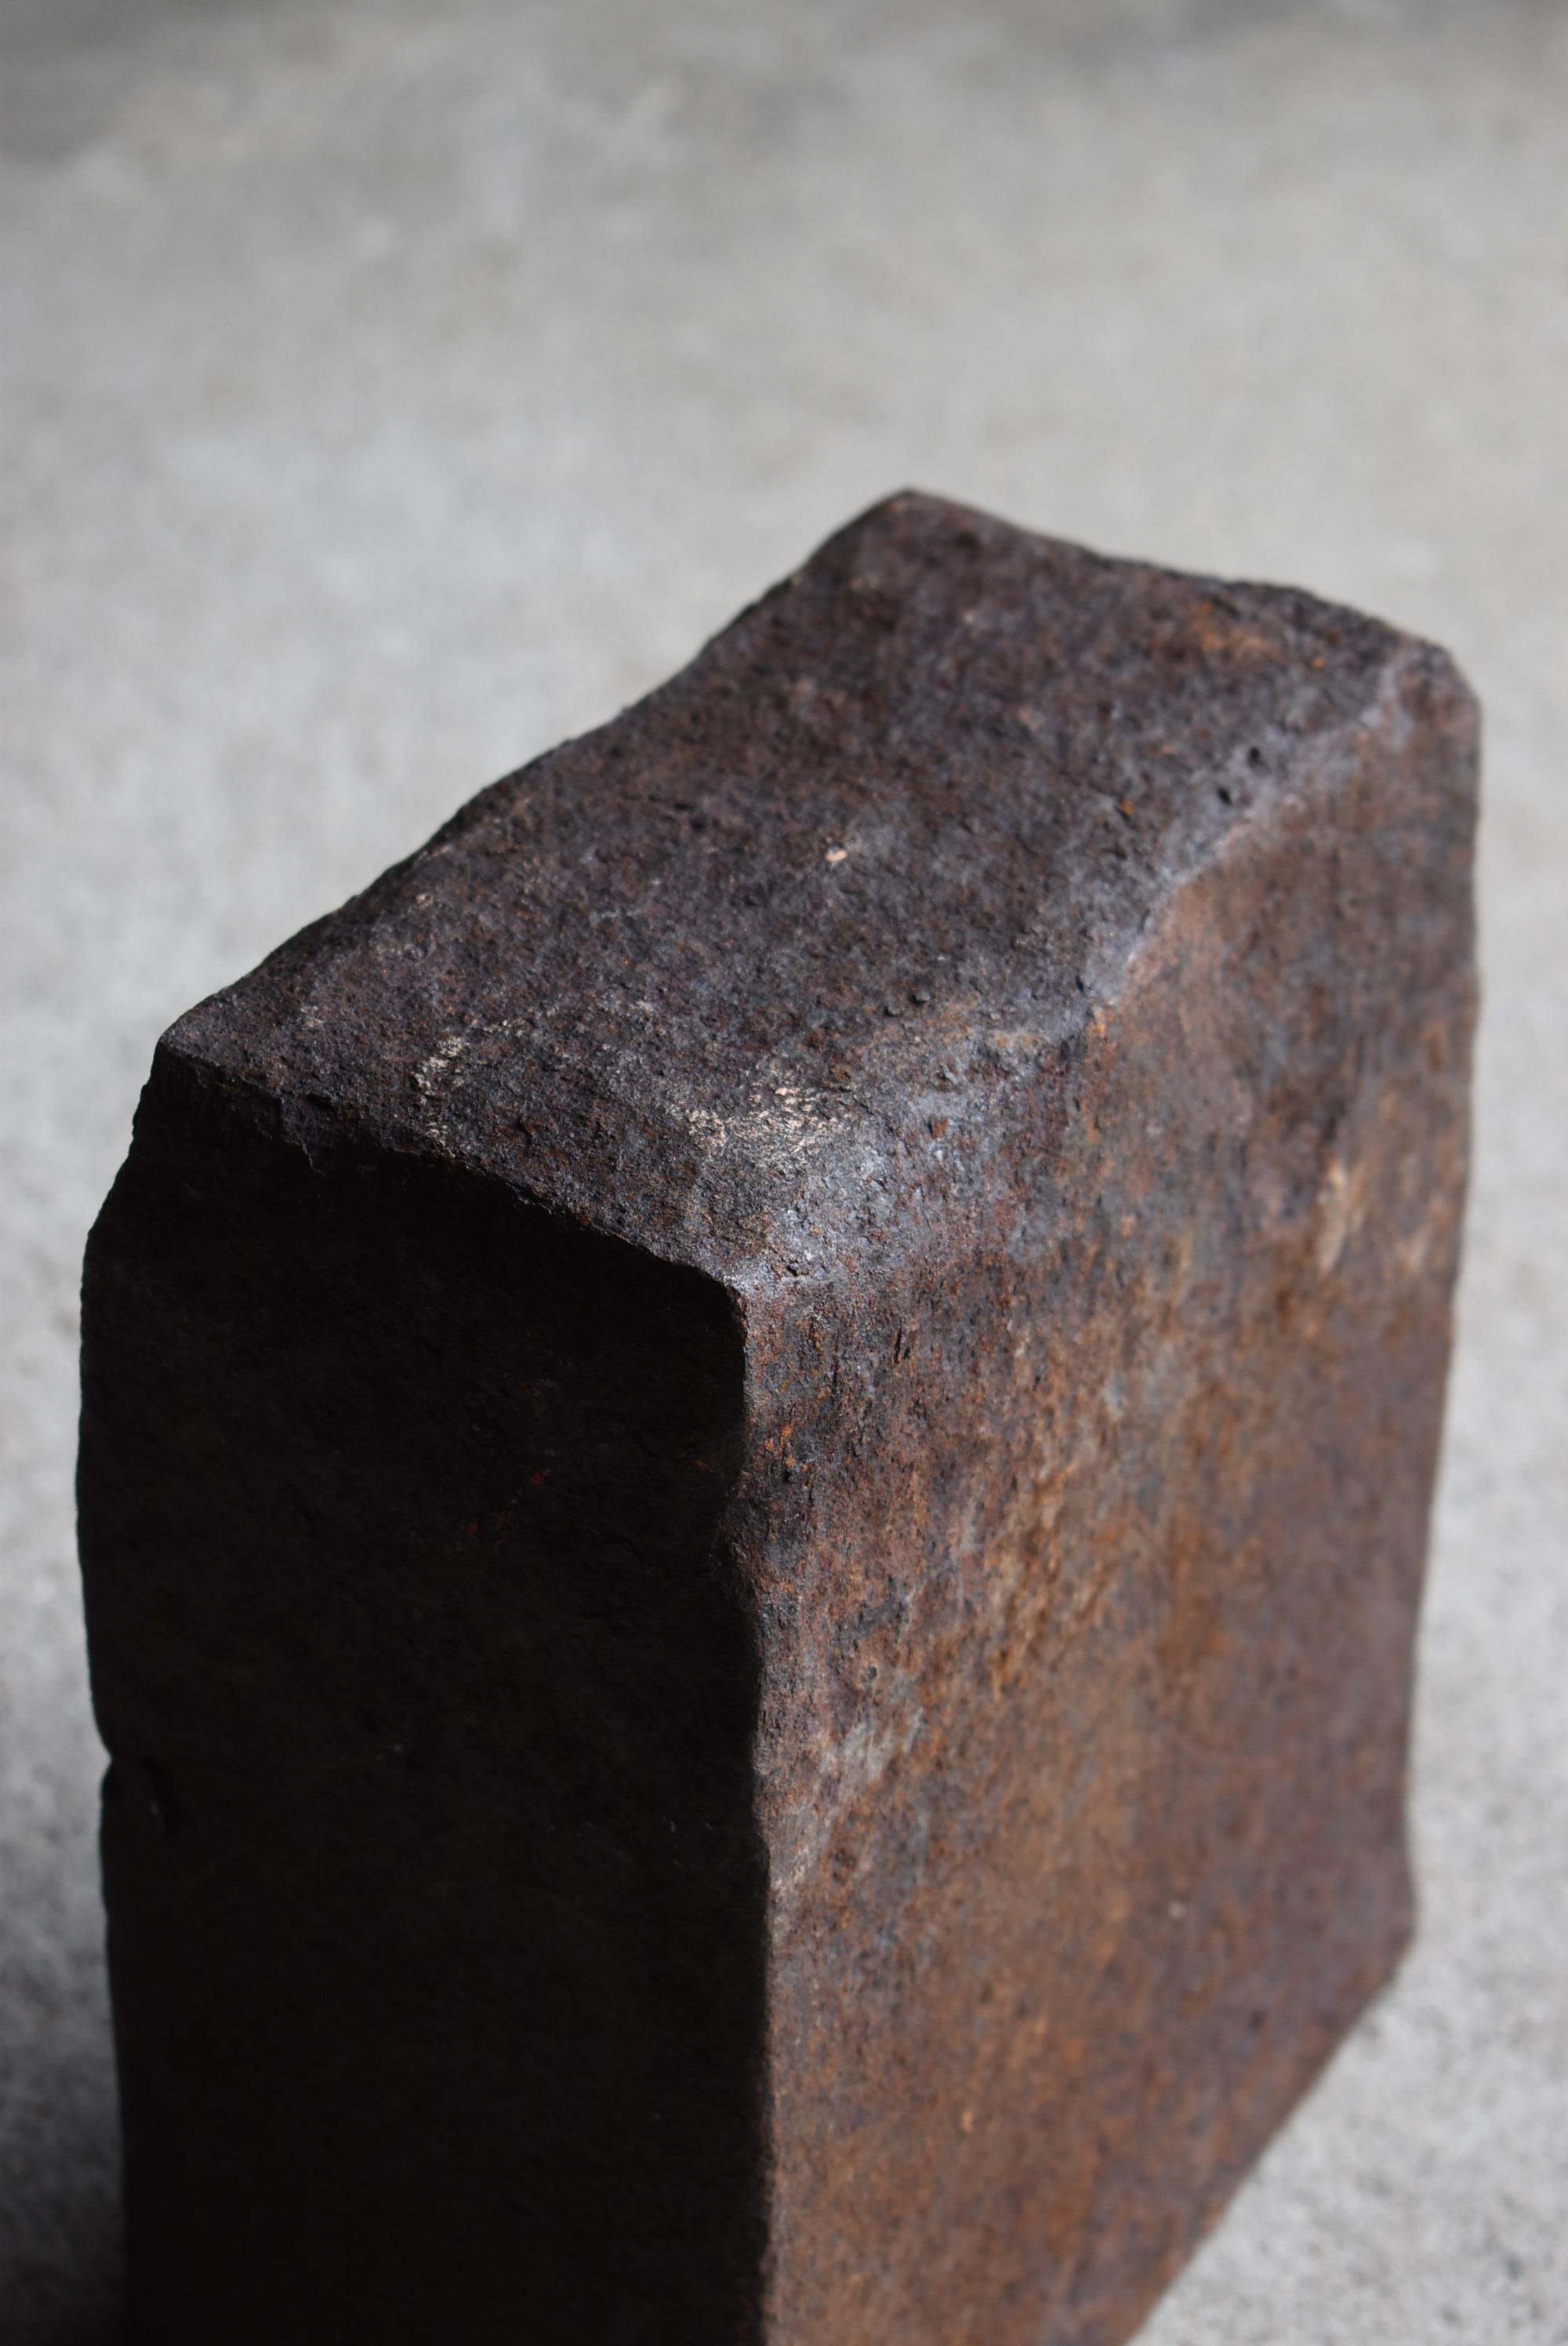 Showa Japanese Antique Iron Block 1920s-1940s / Object Wabisabi